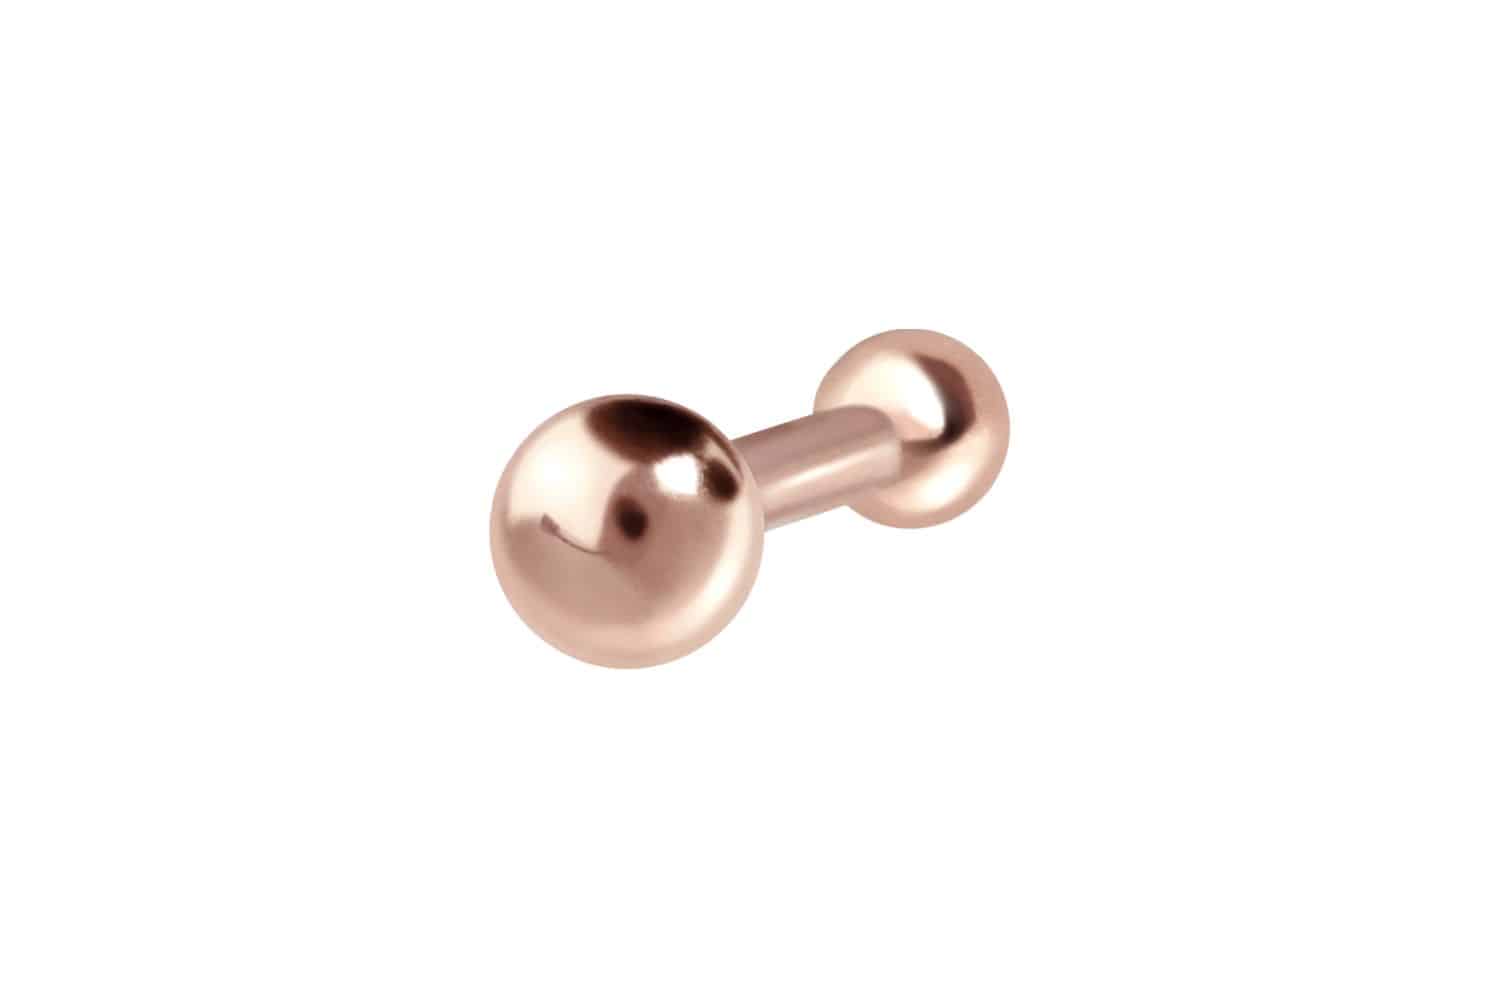 18 carat gold nose stud pin 1.5 mm BALL